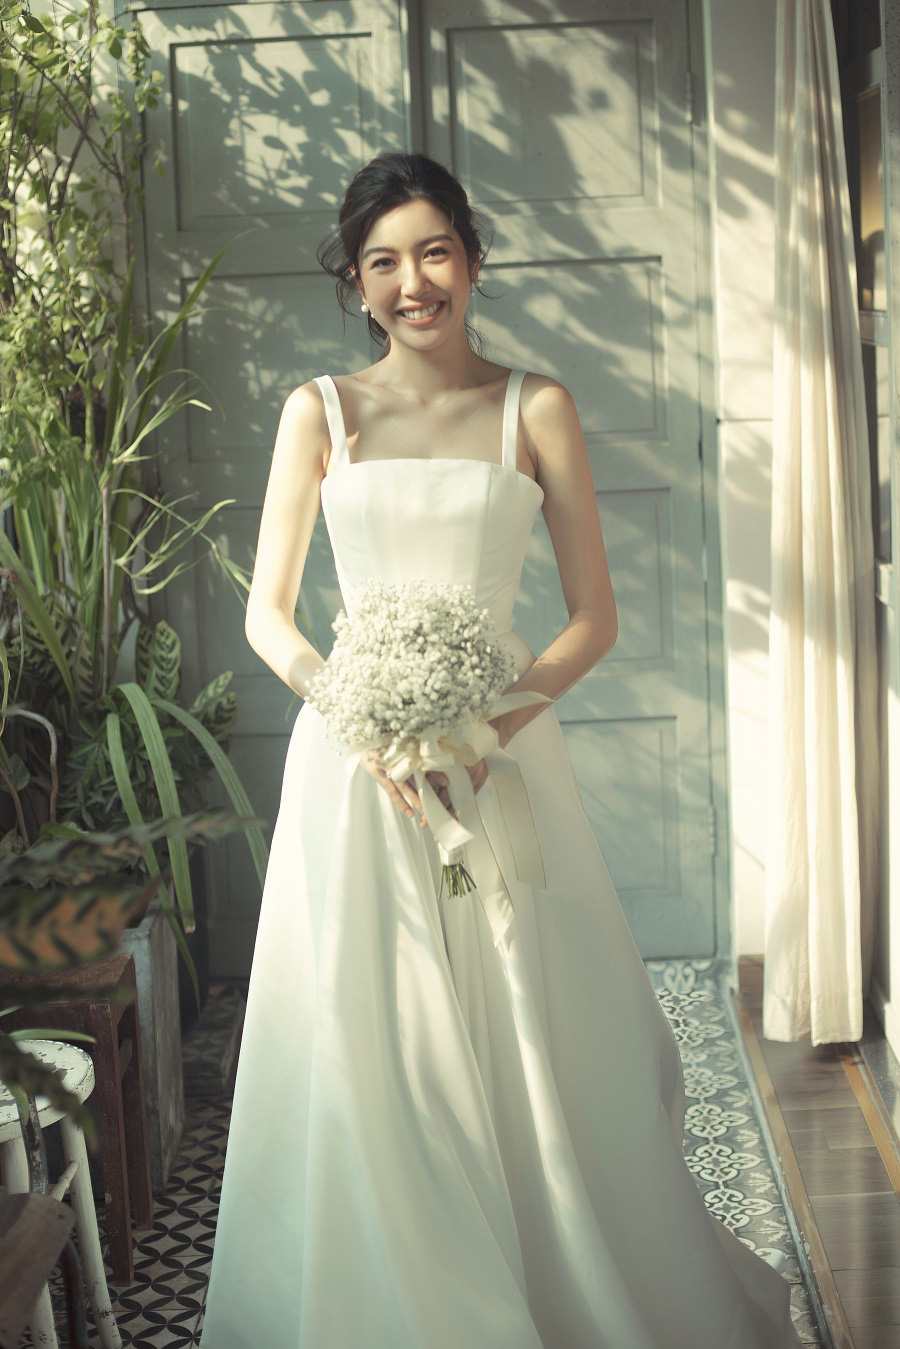 Á hậu Thúy Vân mặc váy cưới xinh đẹp như công chúa, dự định tổ chức tiệc cưới riêng tư trong 2 tháng tới - Ảnh 7.